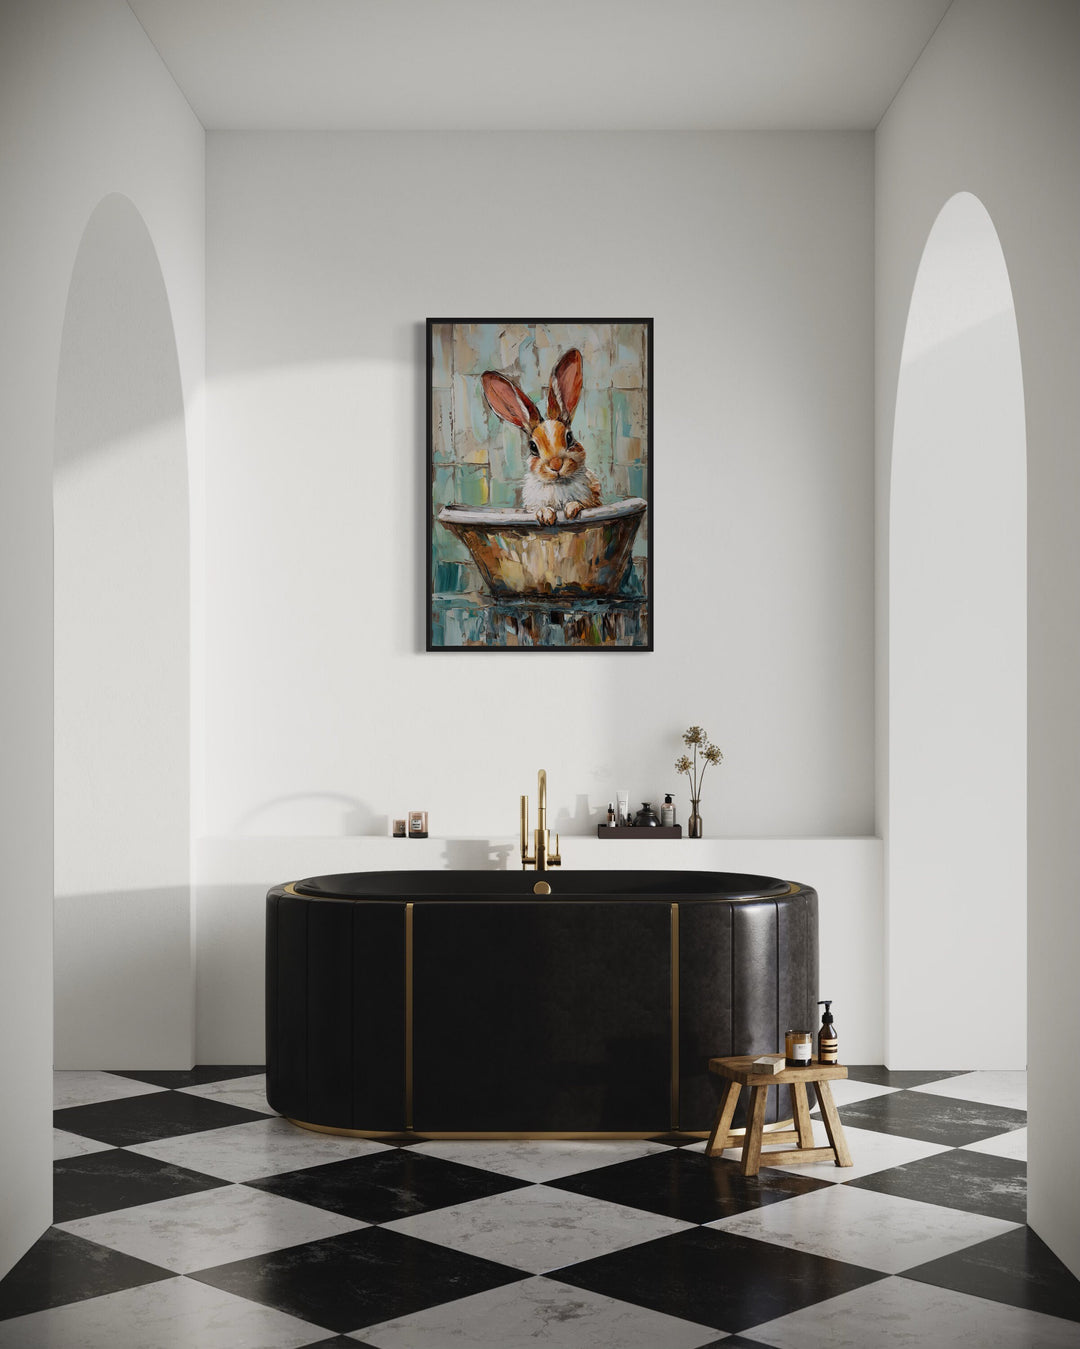 Cute Rabbit In The Bathtub Framed Canvas Wall Art in modern bathroom